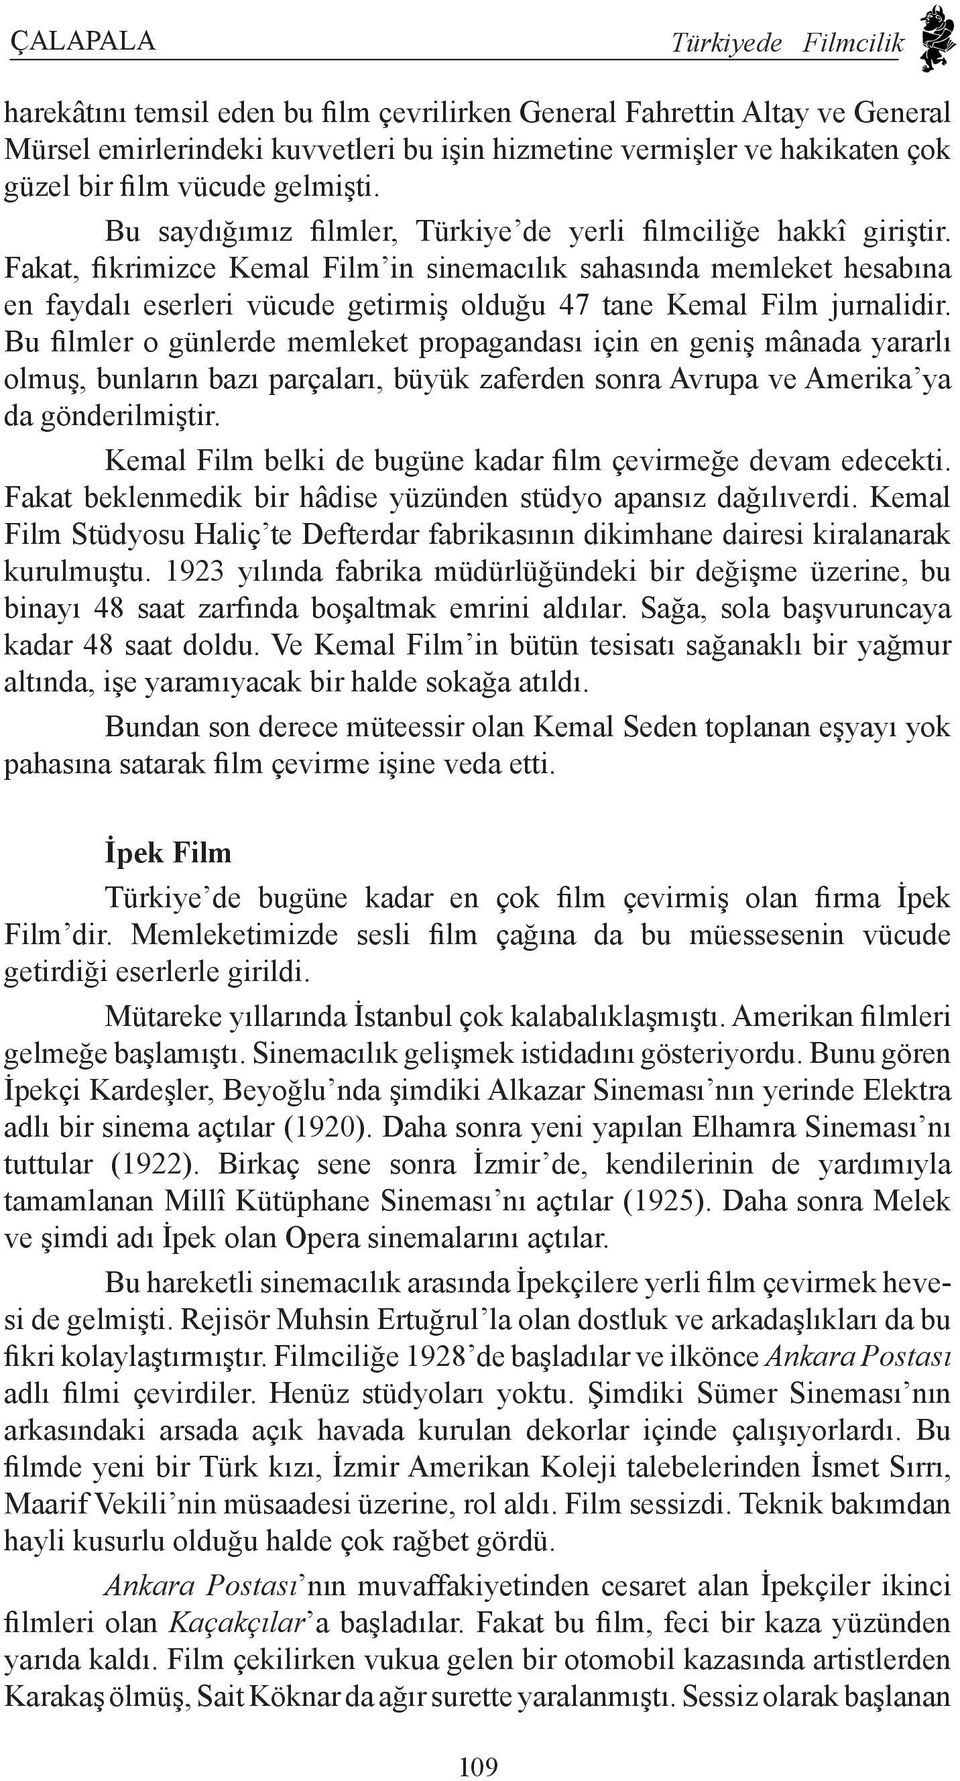 Fakat, fikrimizce Kemal Film in sinemacılık sahasında memleket hesabına en faydalı eserleri vücude getirmiş olduğu 47 tane Kemal Film jurnalidir.